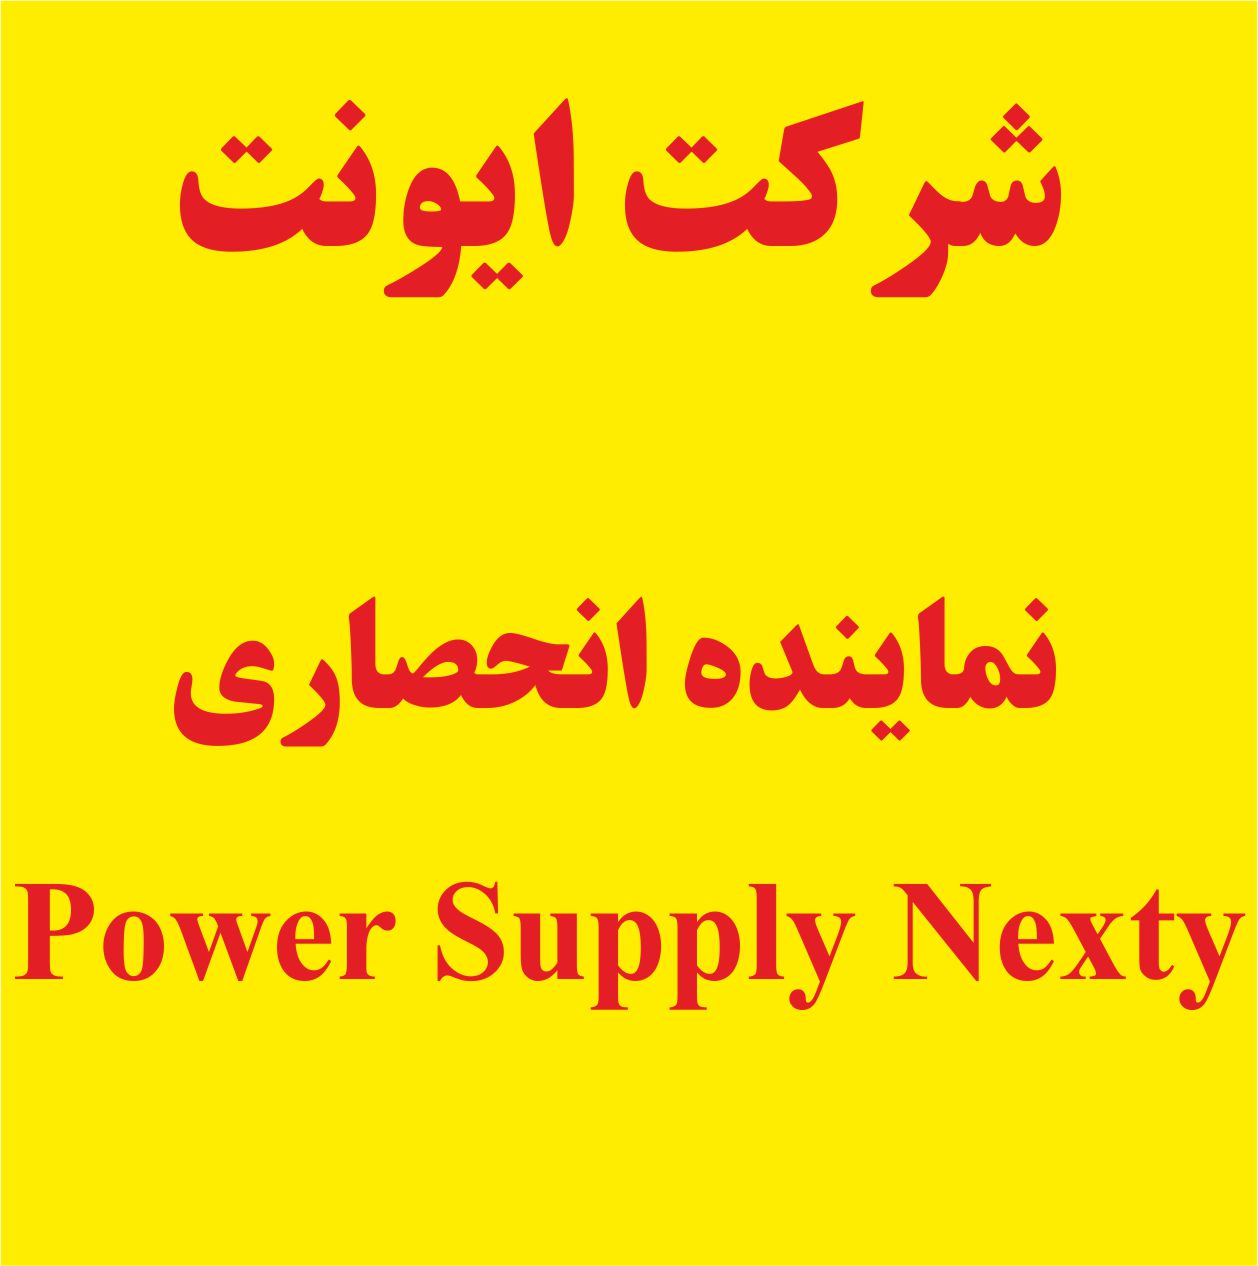 وارد کننده  Power supply Nexty